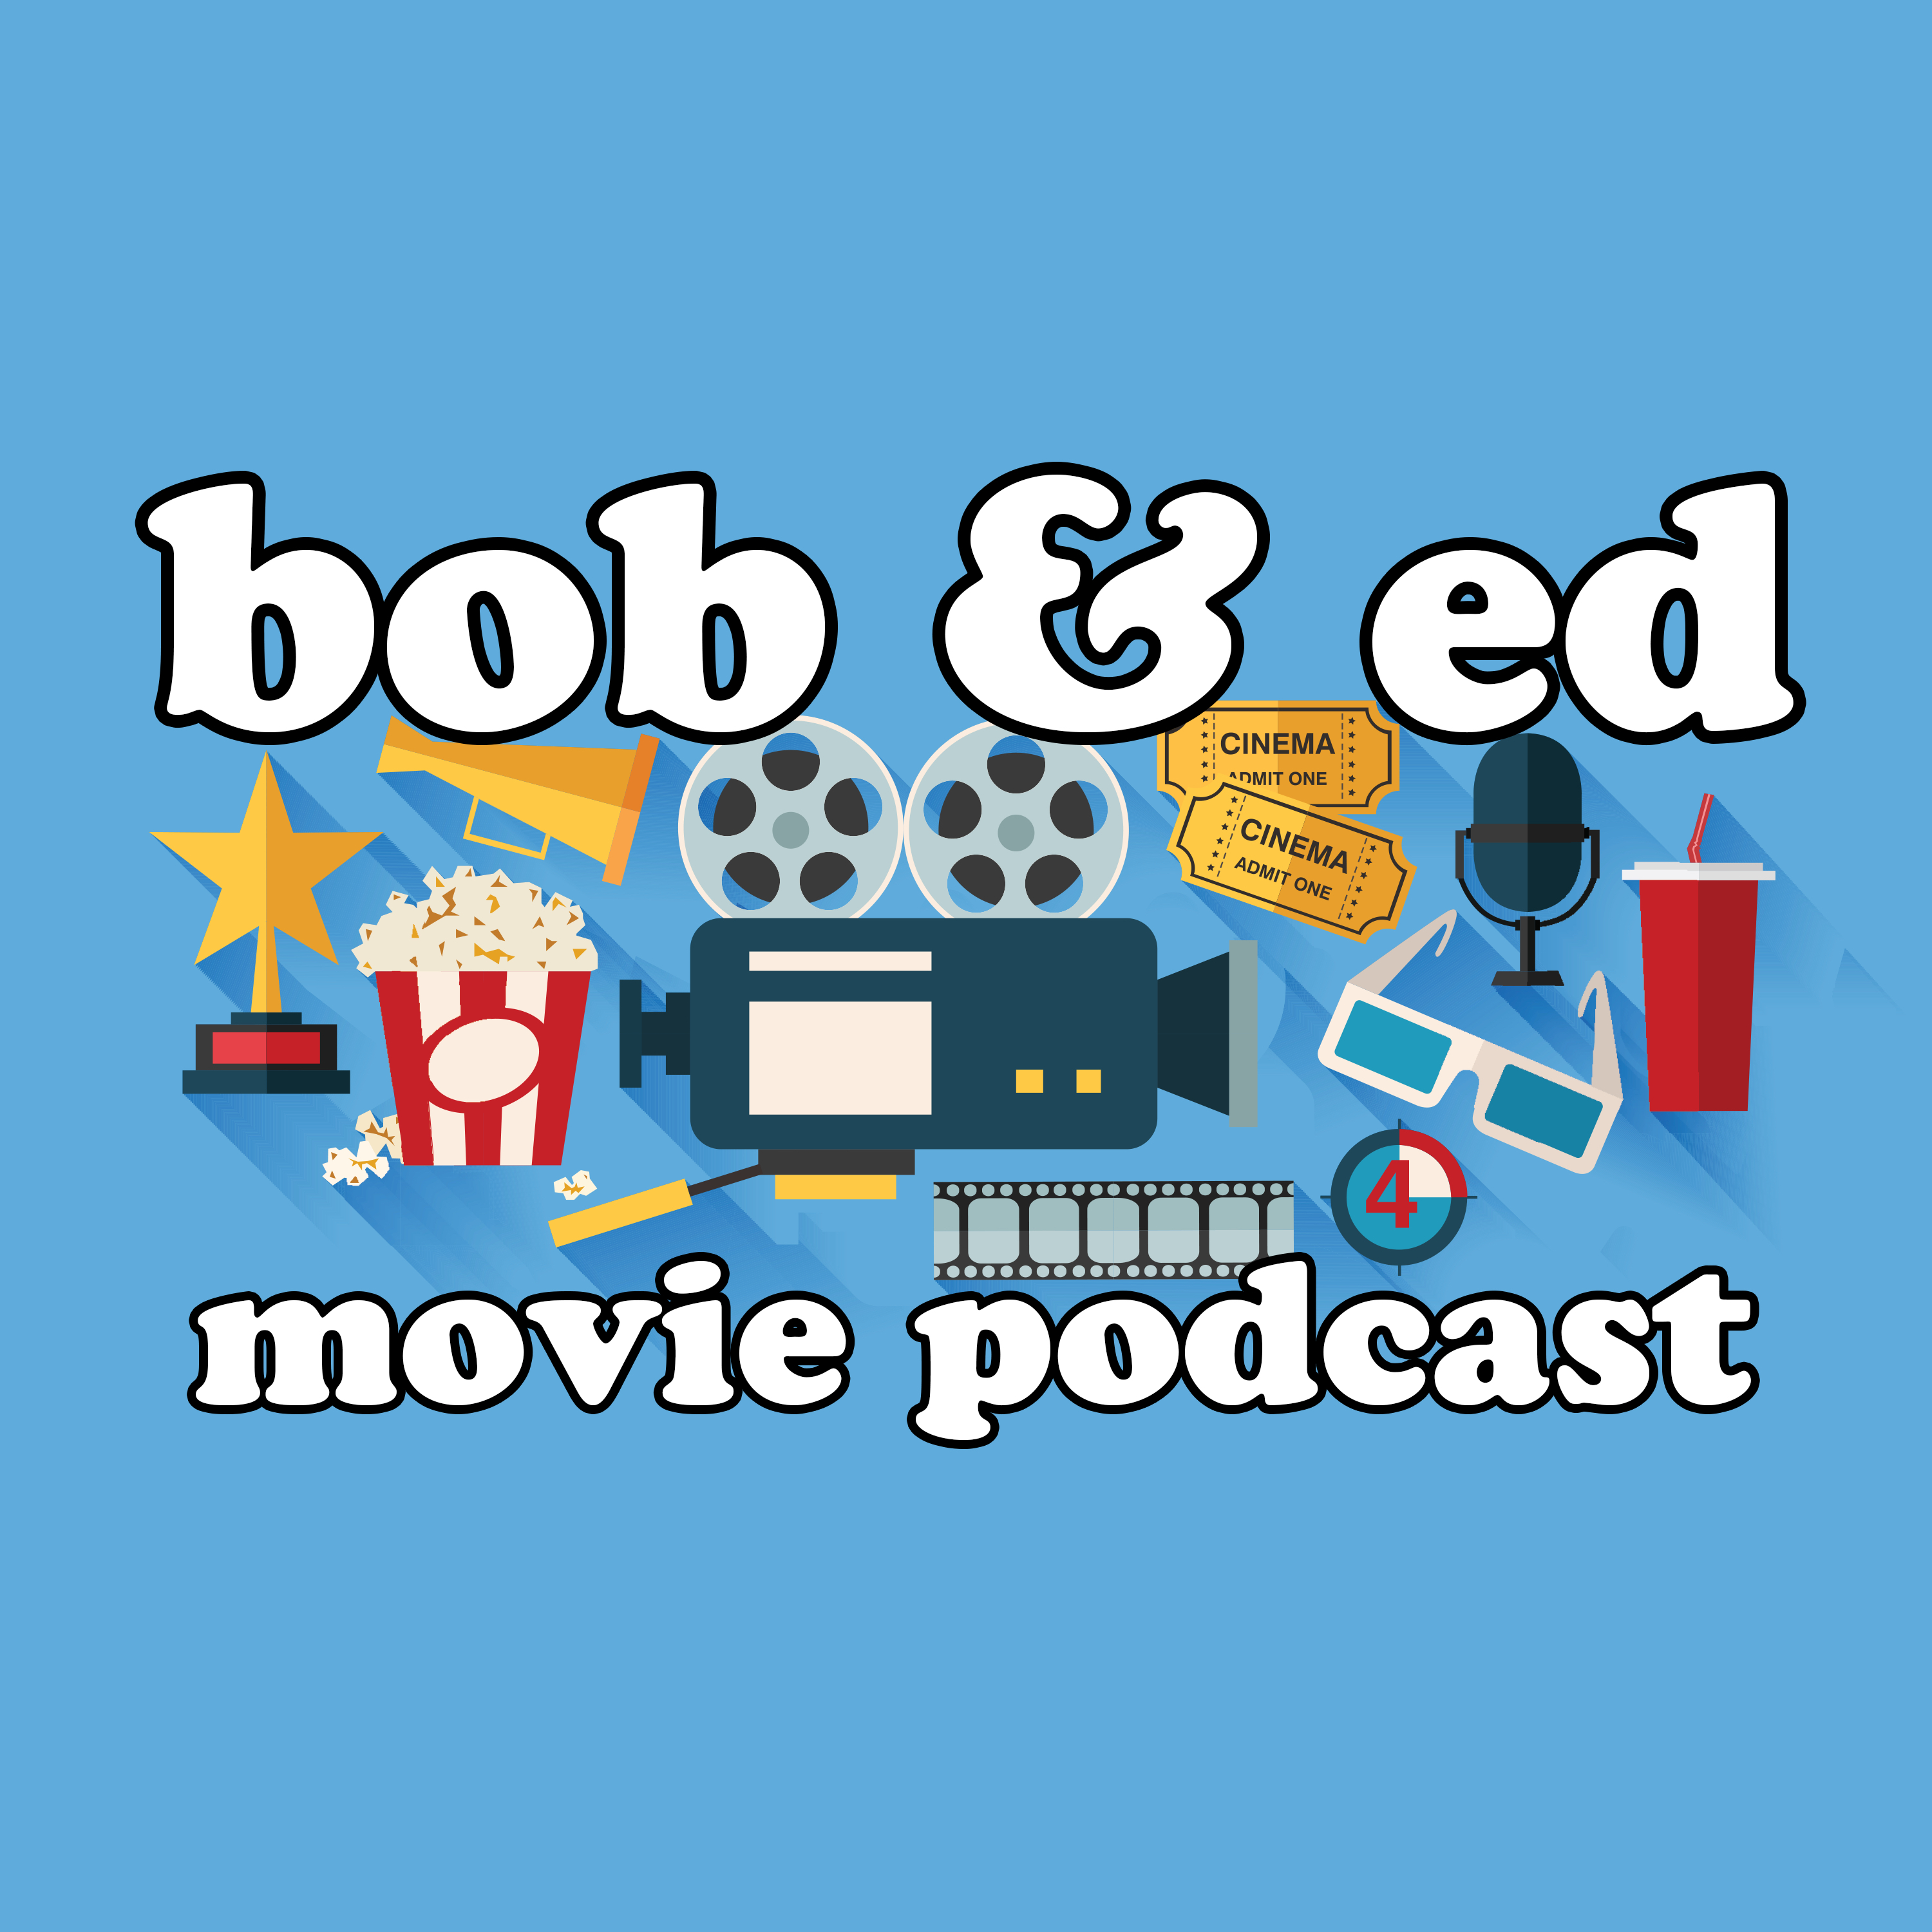 Bob and Ed Movie Podcast